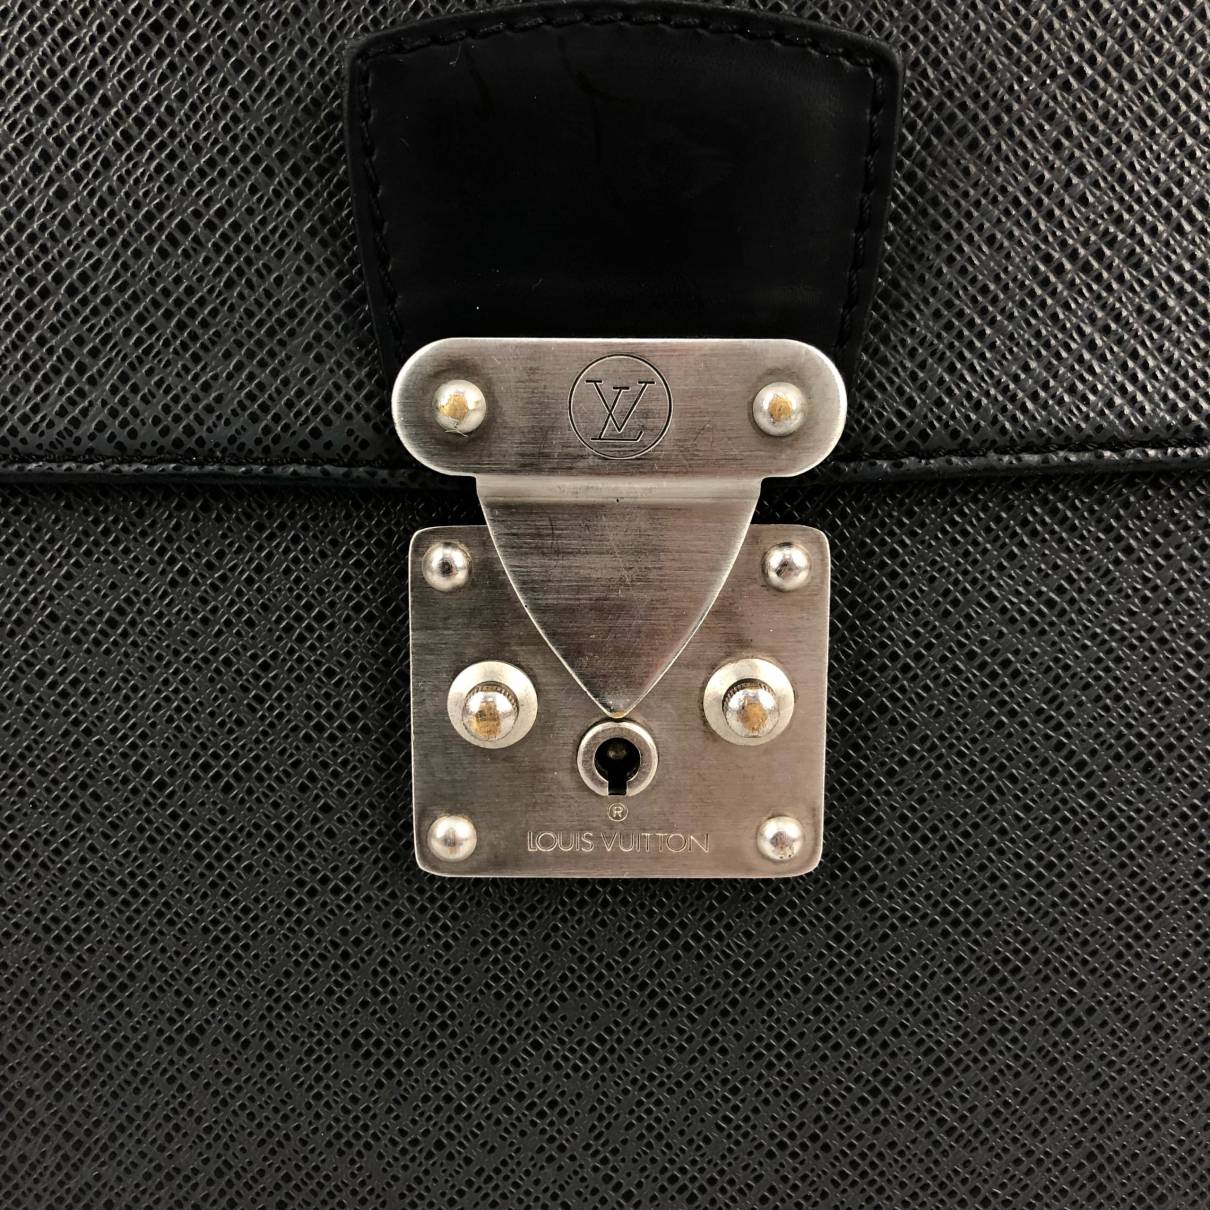 Louis Vuitton Taiga Robusto 2 Briefcase - Black Briefcases, Bags